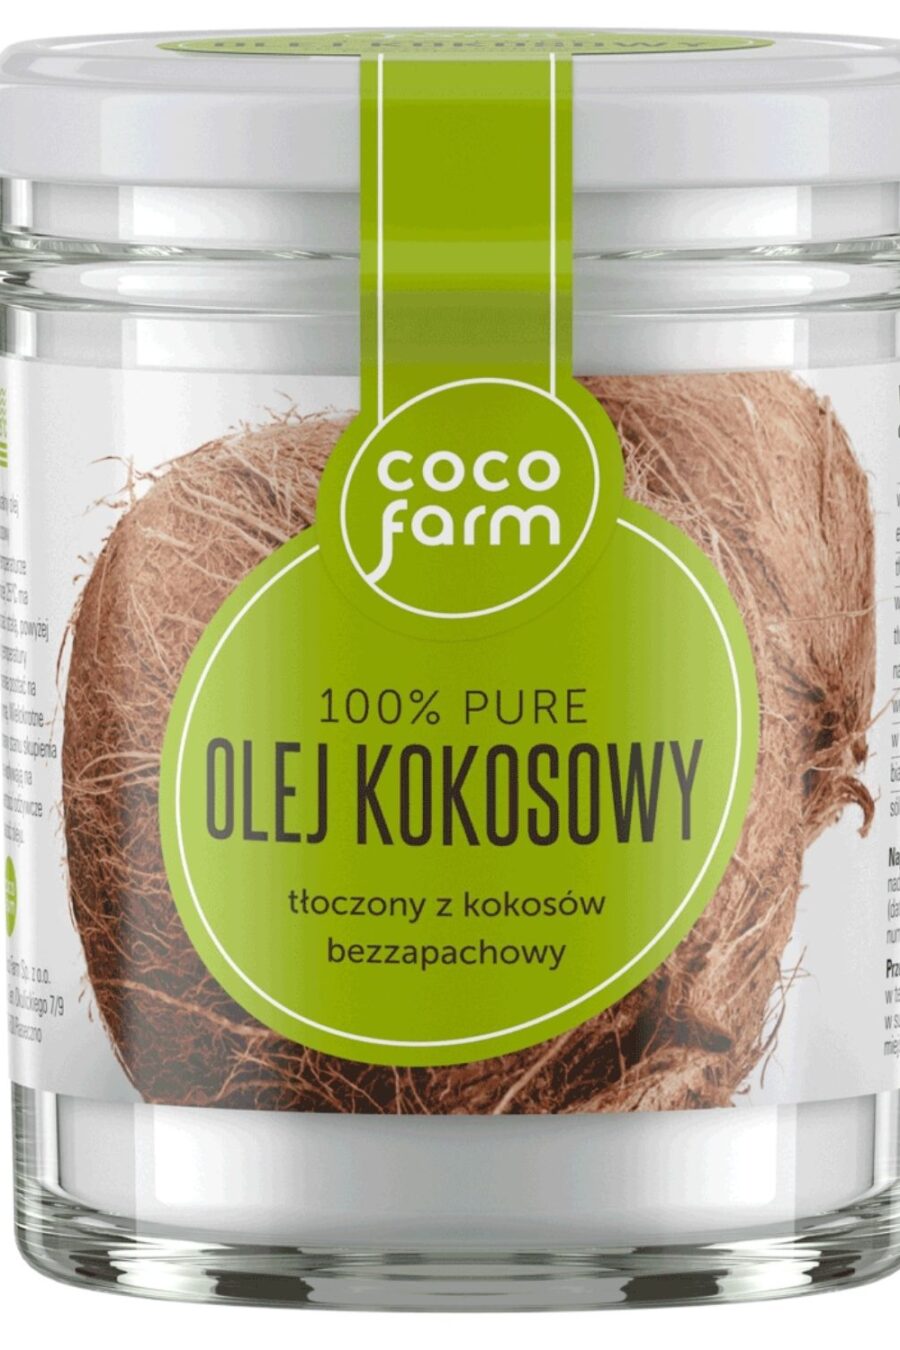 Coco Farm - kokosų aliejus 100 % grynas 260 ml (240 g)